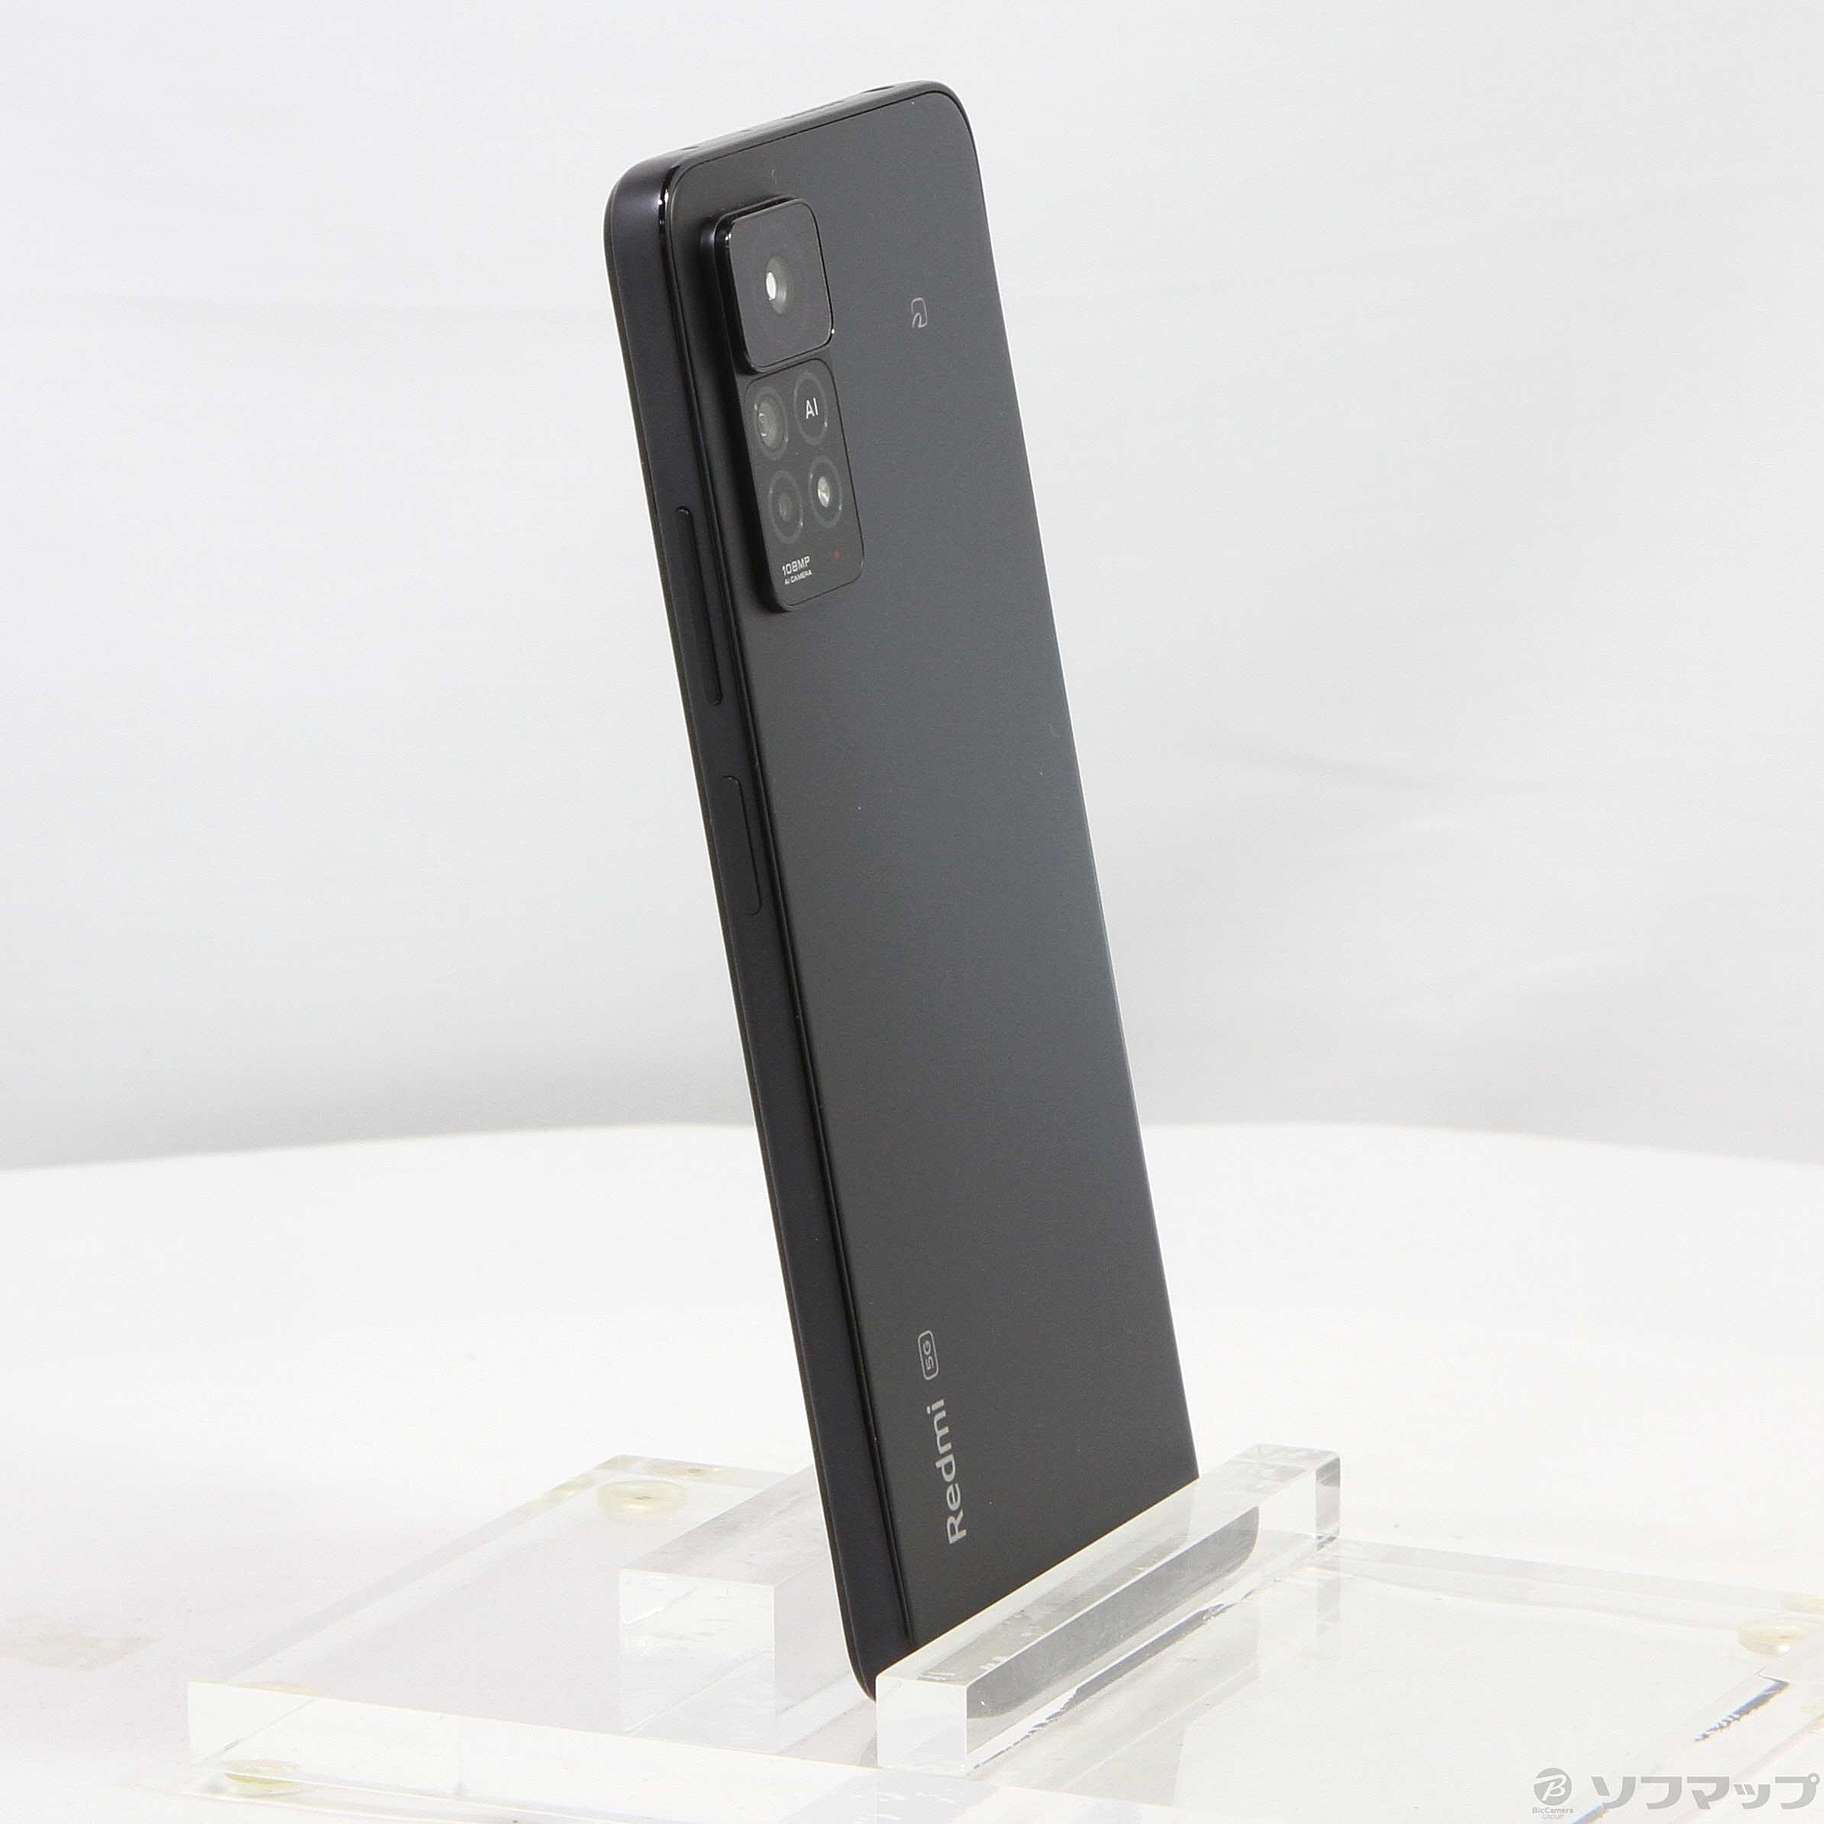 【新品未開封】Redmi Note 11グレースマートフォン/携帯電話